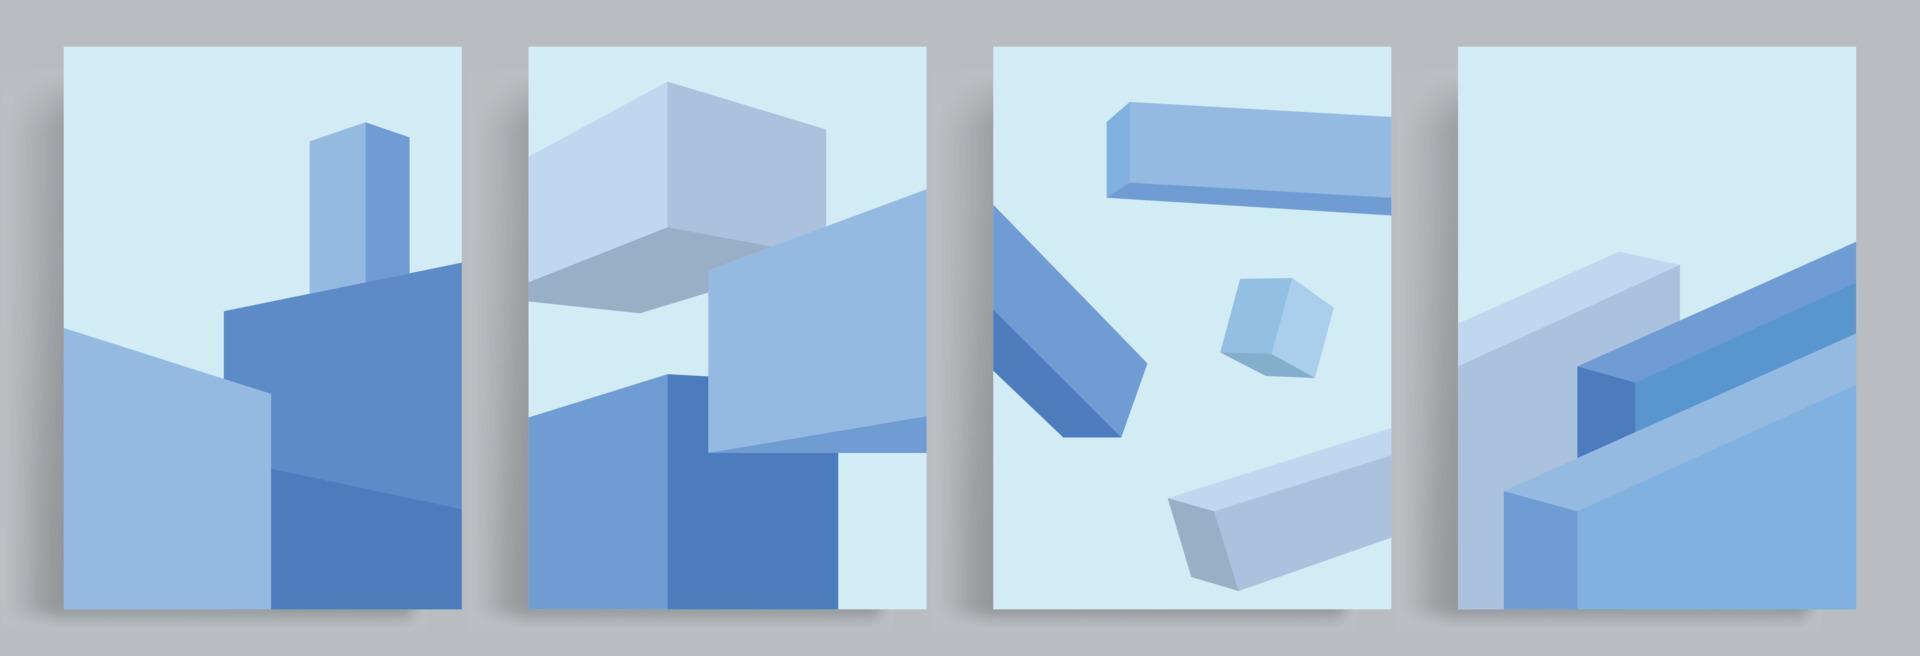 4 sets van minimalistische abstract 3d vorm achtergrond. onregelmatig geregeld blauw blokken. geschikt voor affiches, boek dekt, brochures, tijdschriften, flyers, boekjes. vector